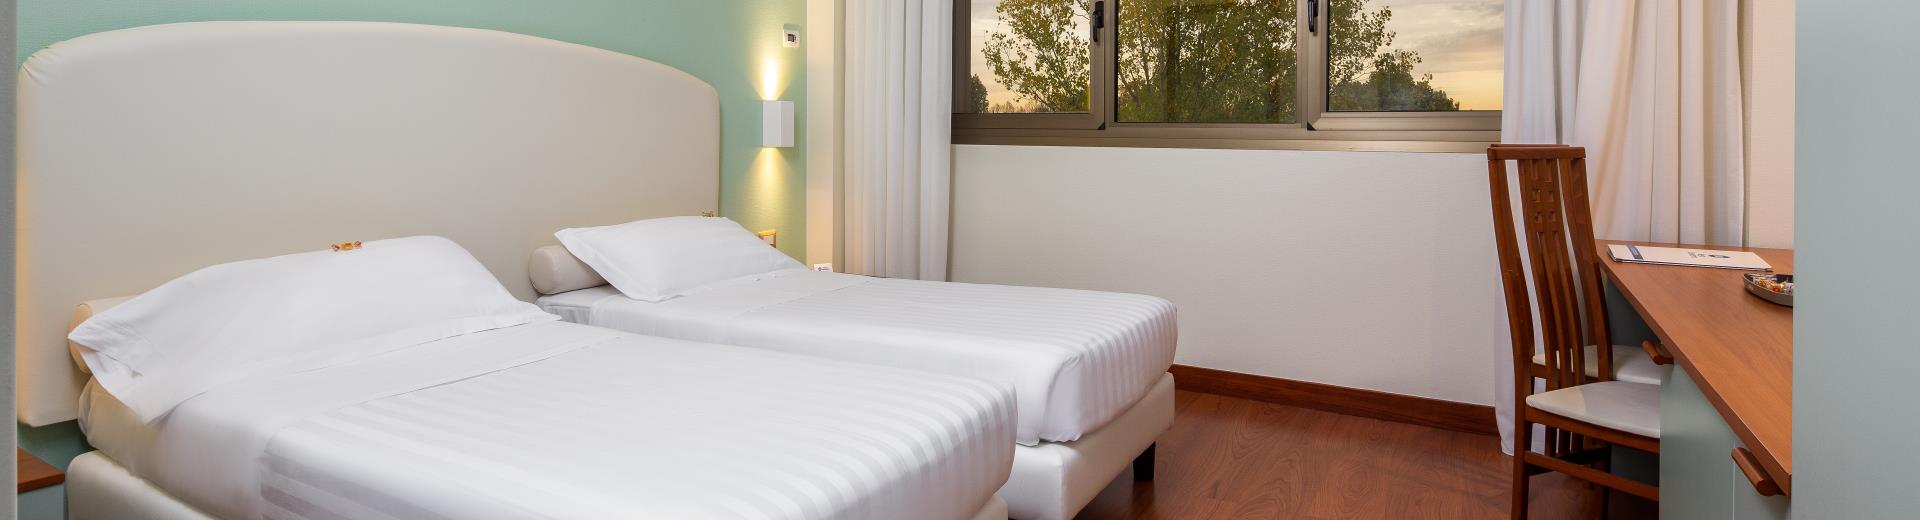 Goditi il comfort delle camere di BW Air Hotel Linate, il nostro hotel 4 stelle vicinissimo all''aeroporto!